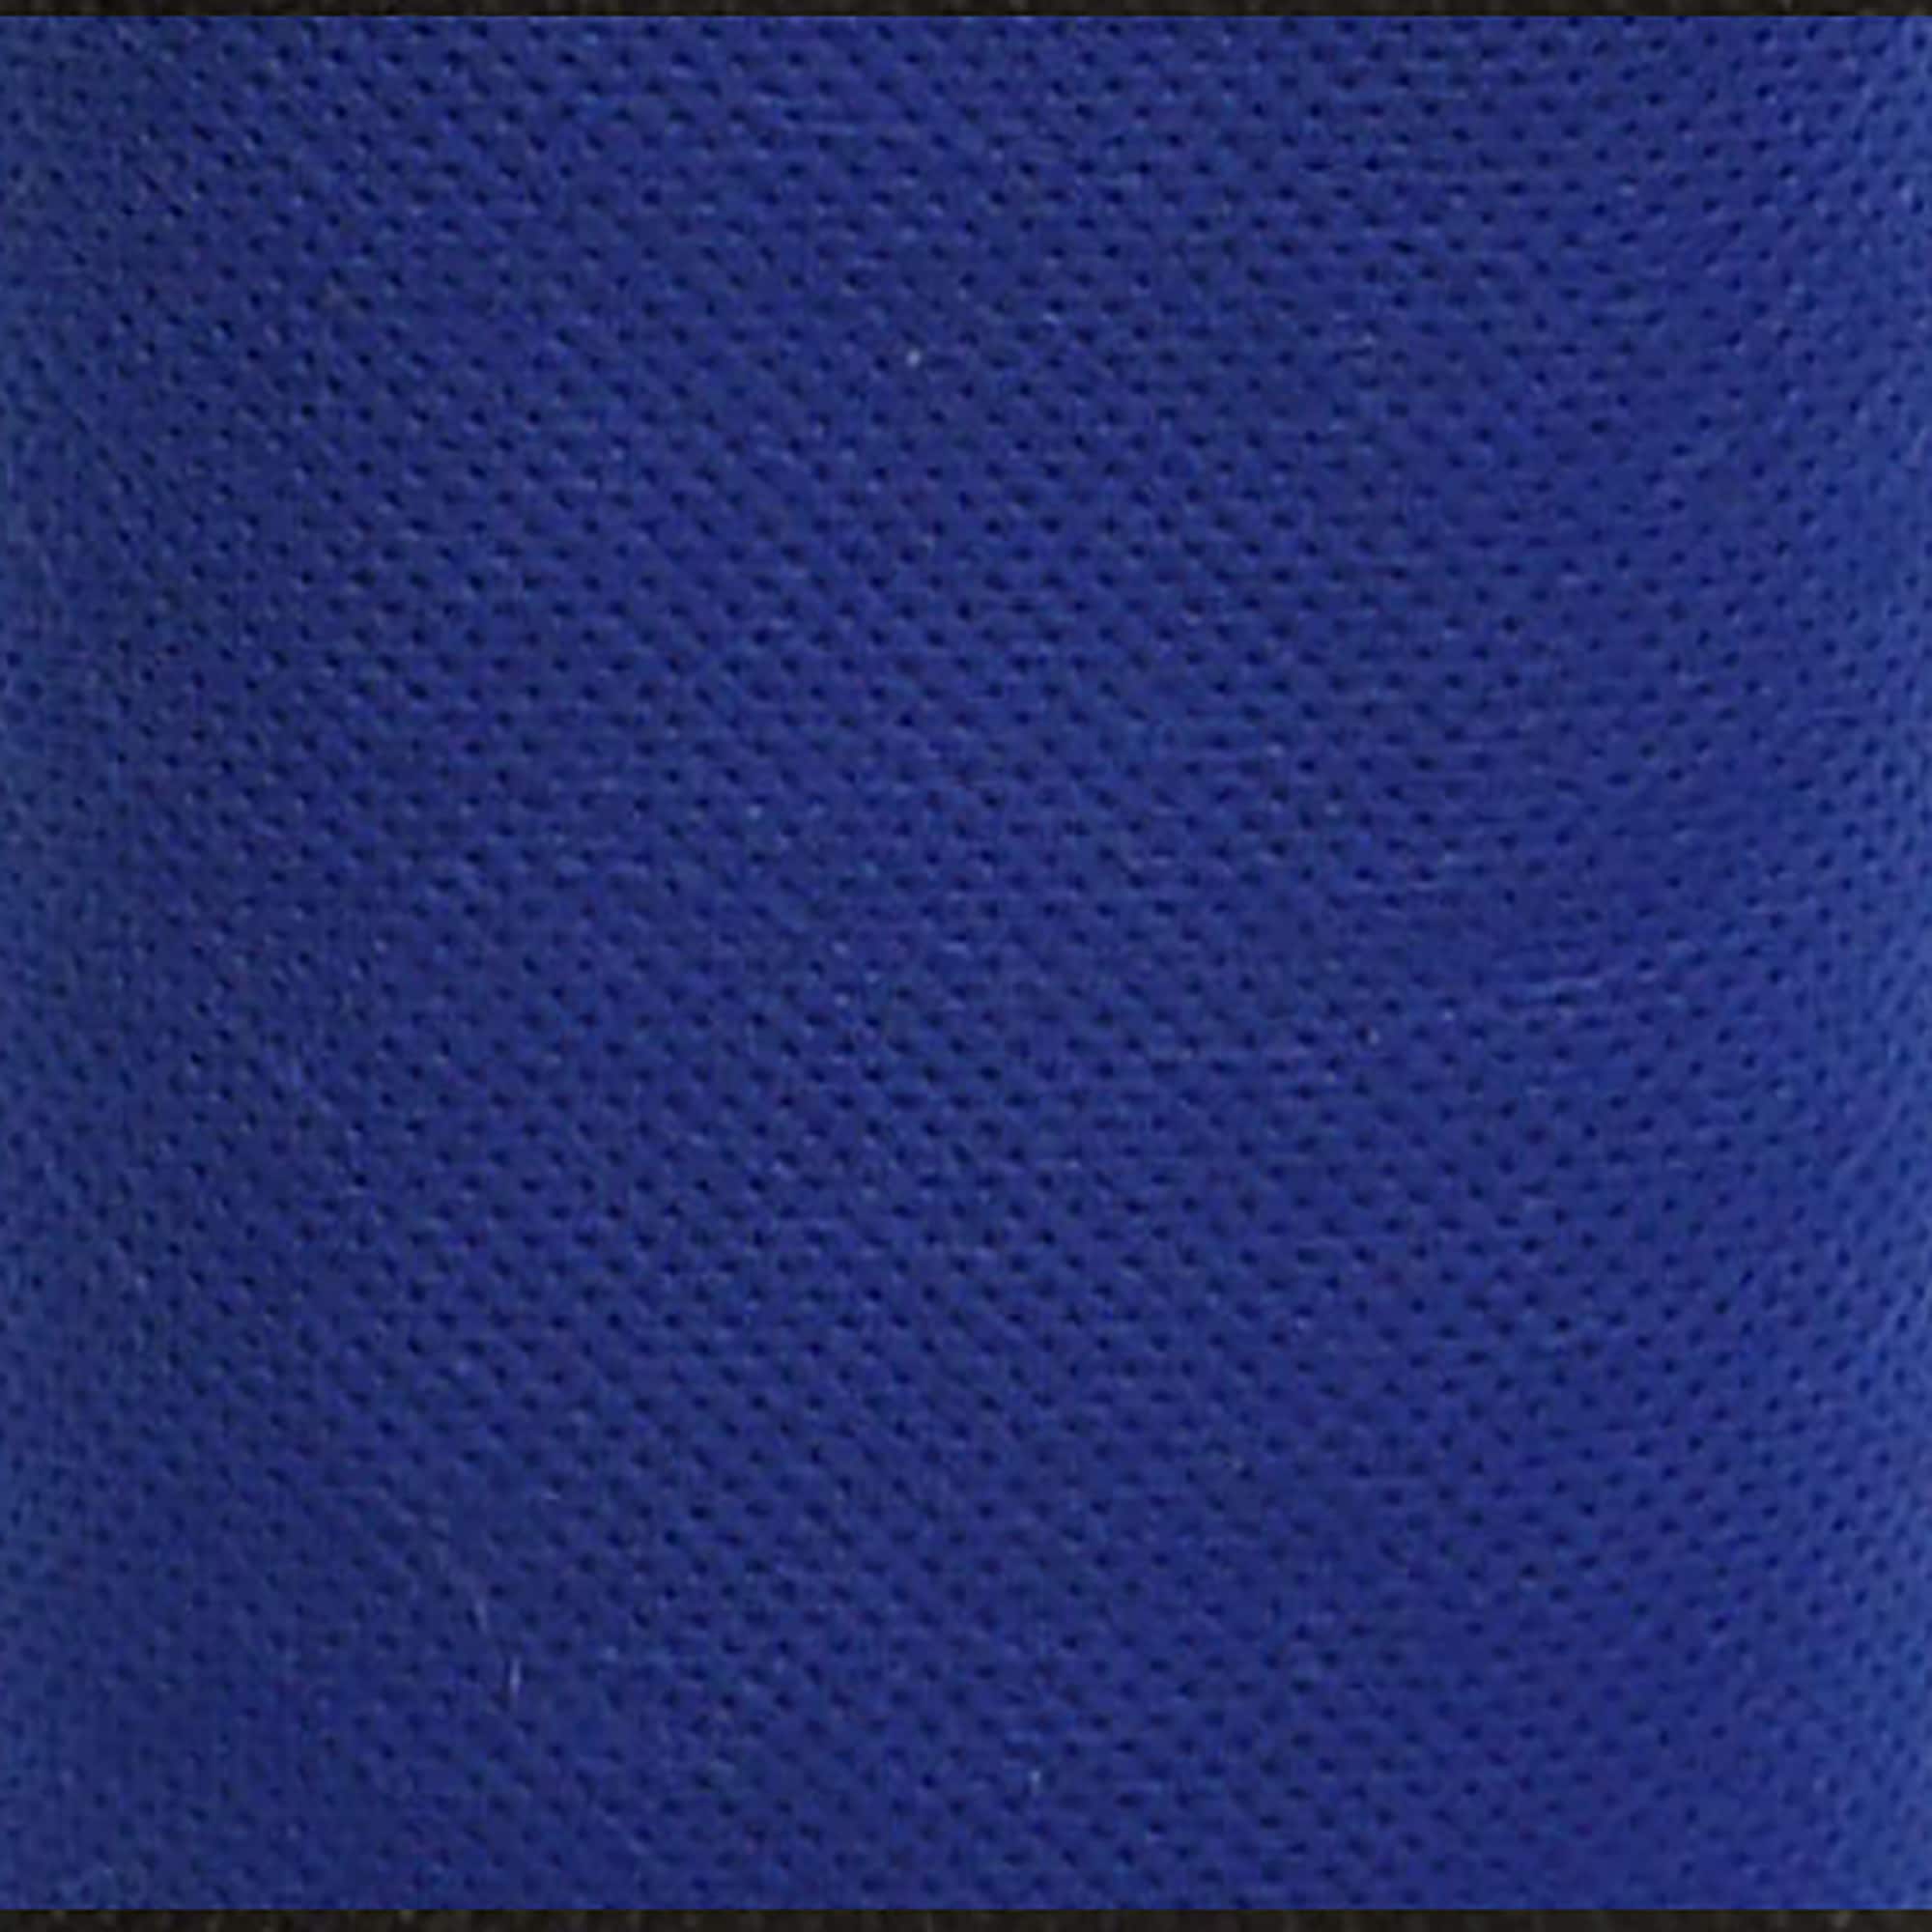 Oly-Fun&#x2122; Blueberry Craft Fabric